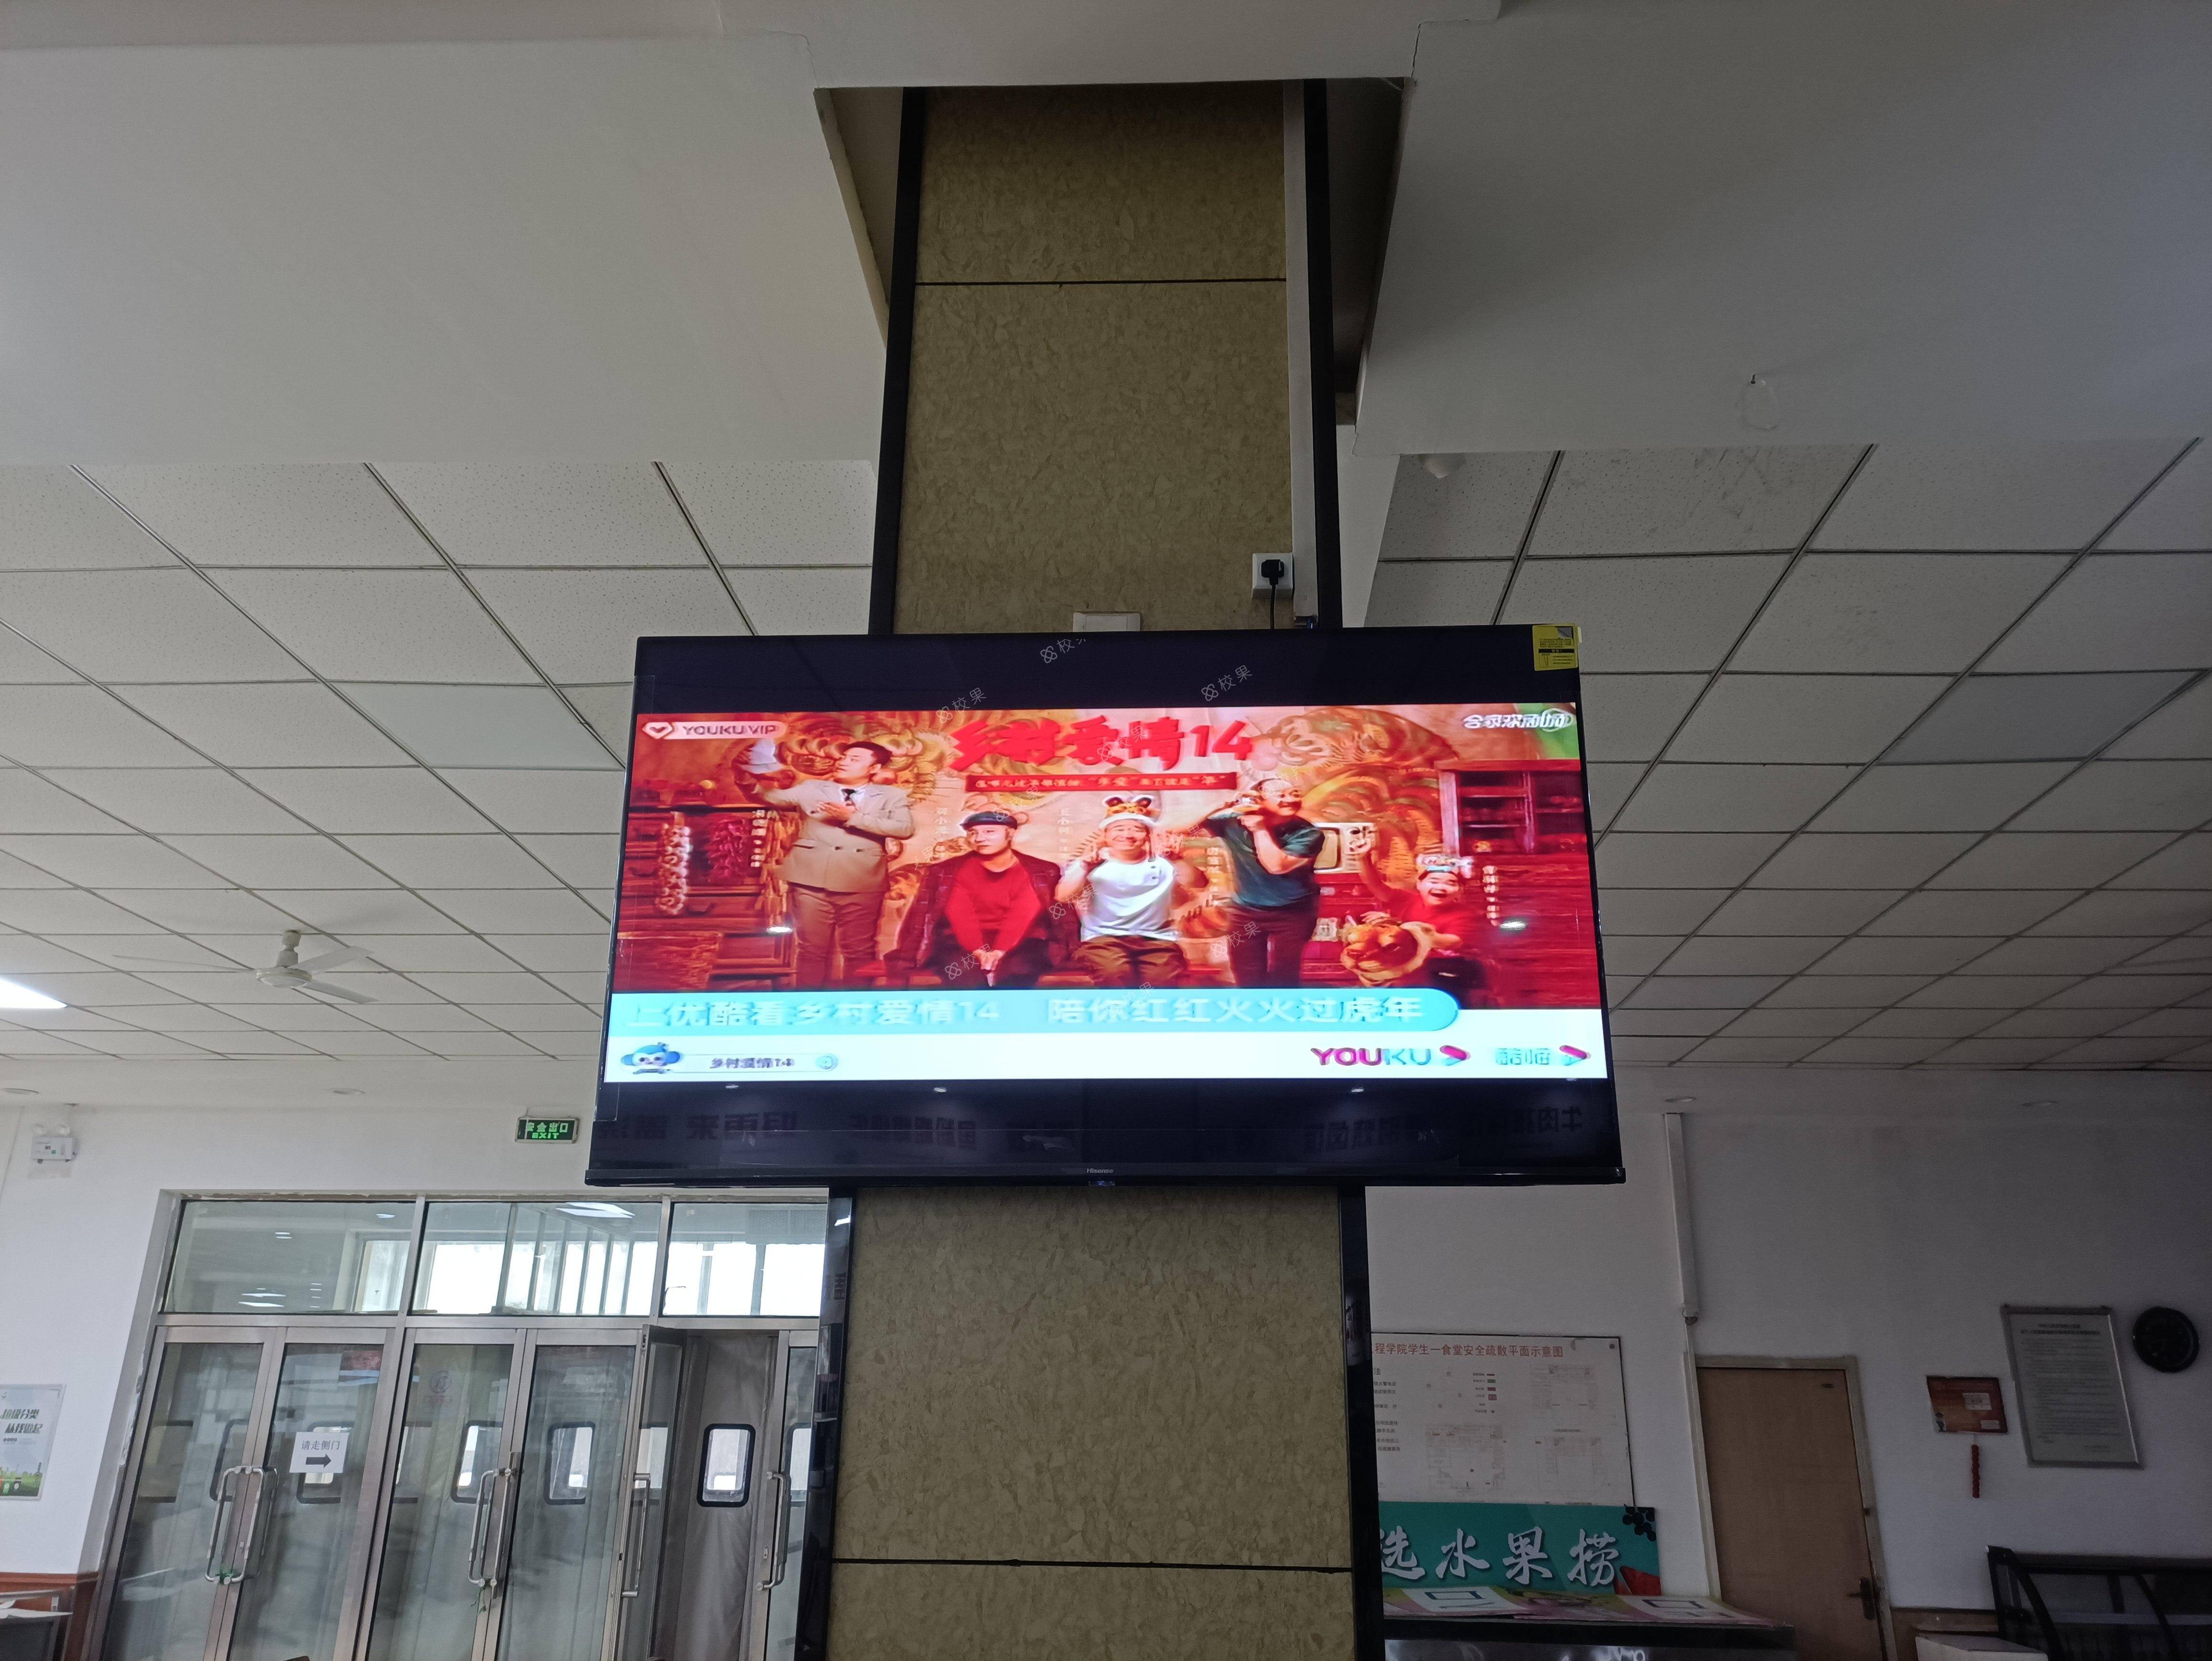 液晶屏广告 重庆电子工程职业学院